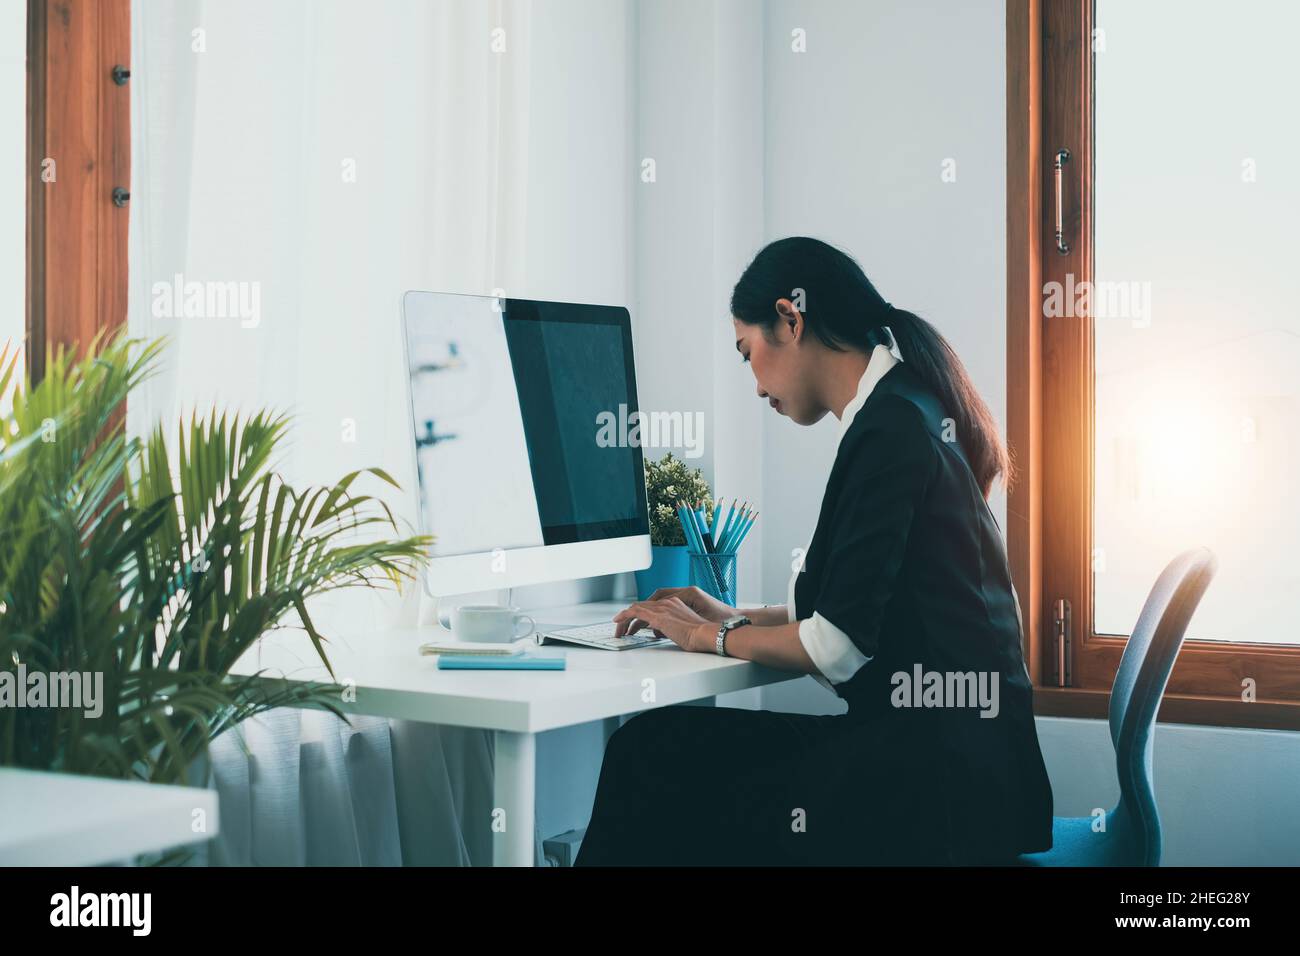 Une femme d'affaires utilisant l'ordinateur pour la cyber-sécurité pour son compte d'épargne, les affaires, la technologie, l'avenir, le concept de ressource numérique. Banque D'Images